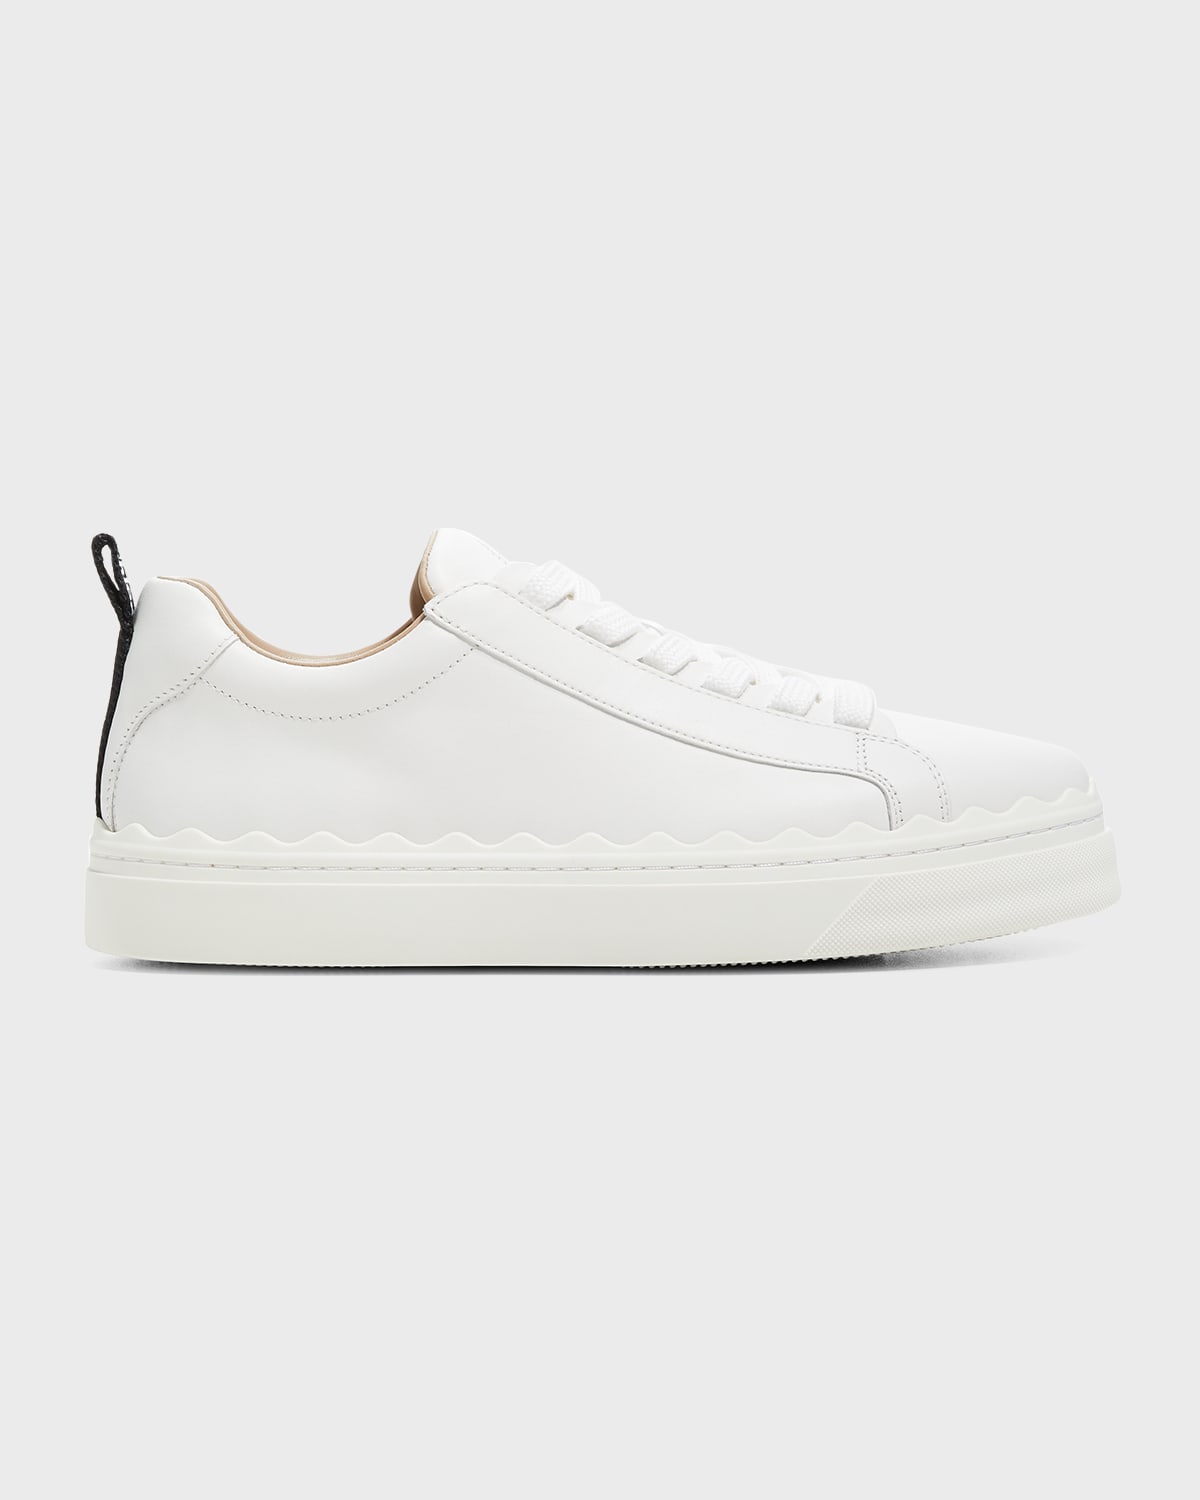 White Rubber Sneaker | Neiman Marcus